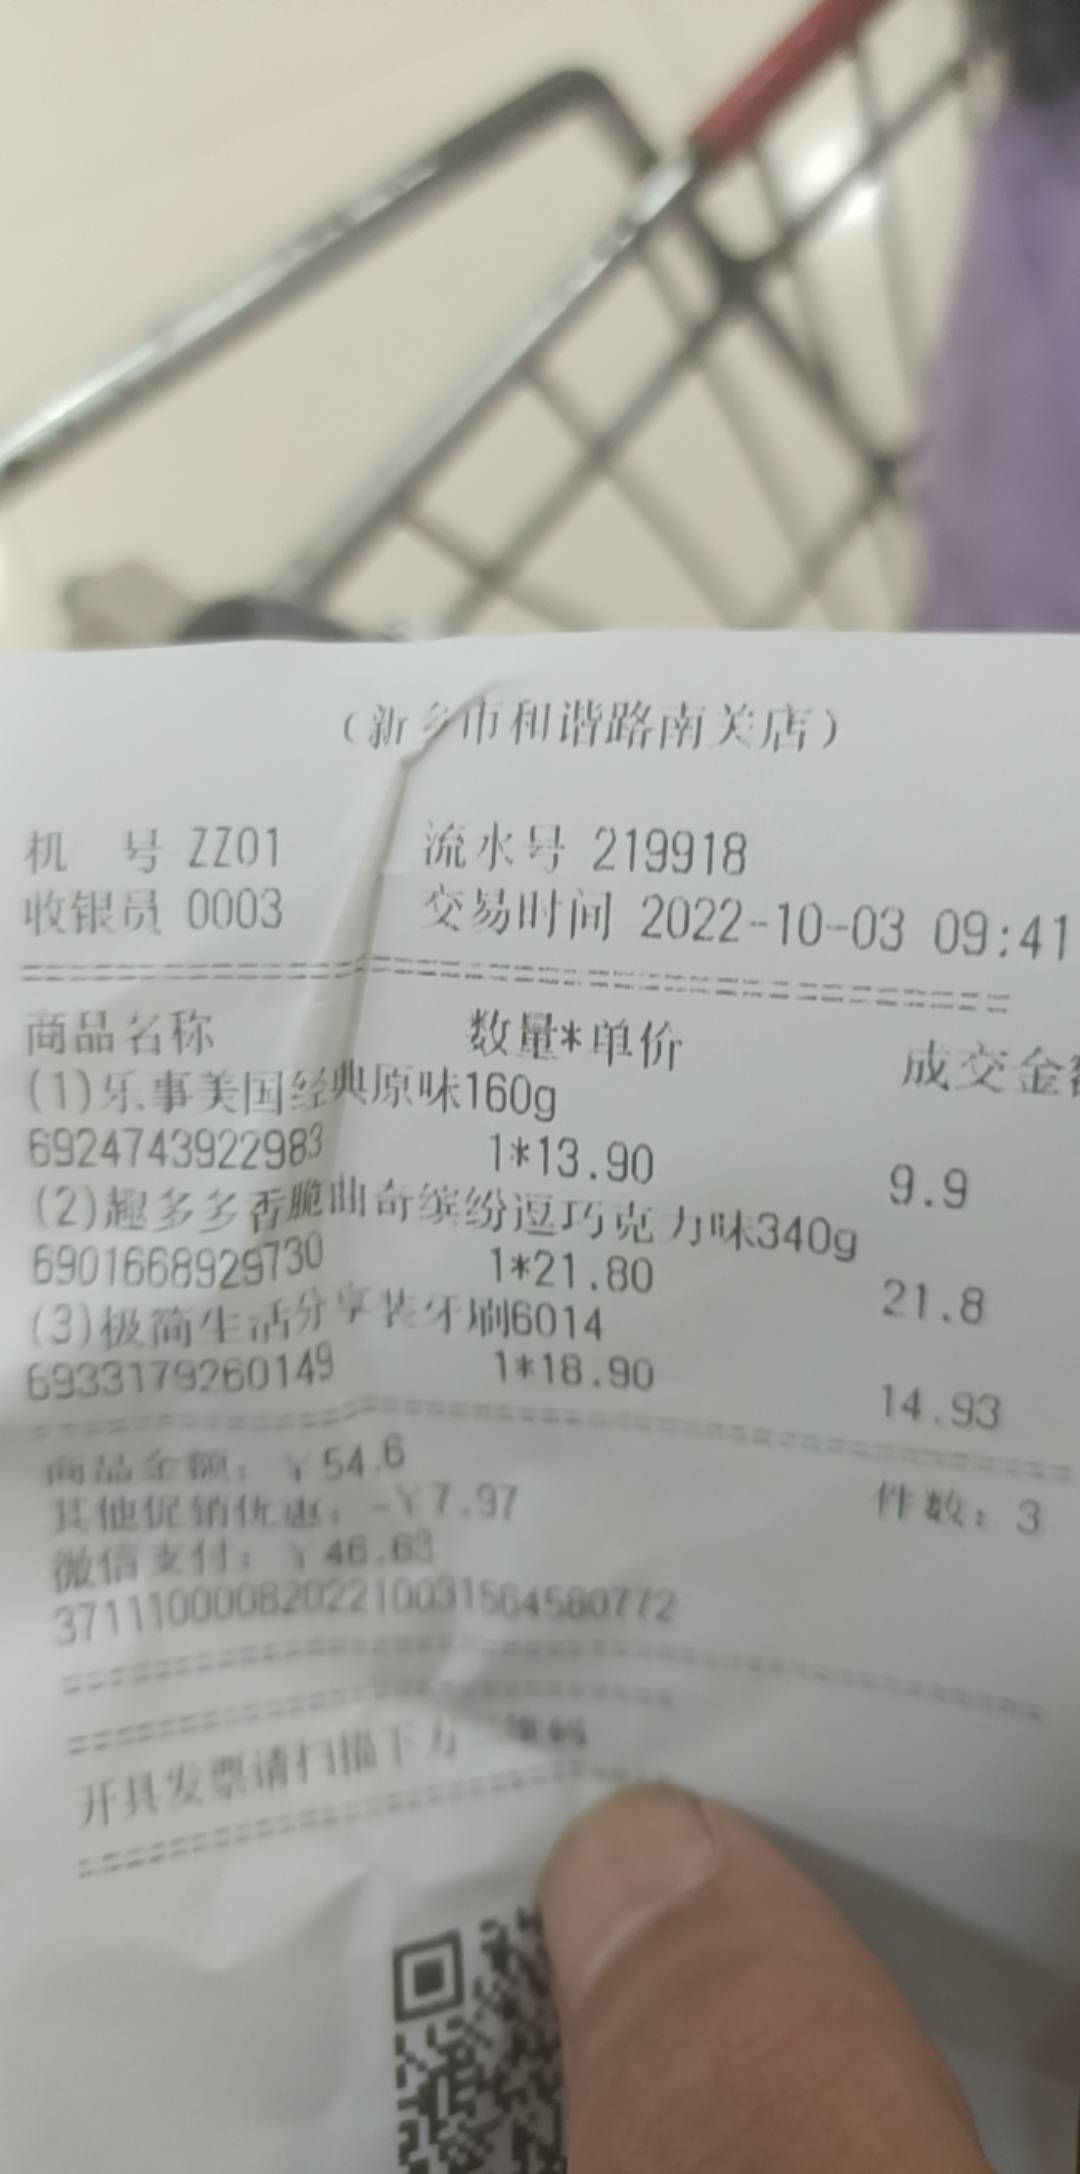 永辉超市购买出示数字钱包不抵扣，我醉了

53 / 作者:啥明星不明星 / 